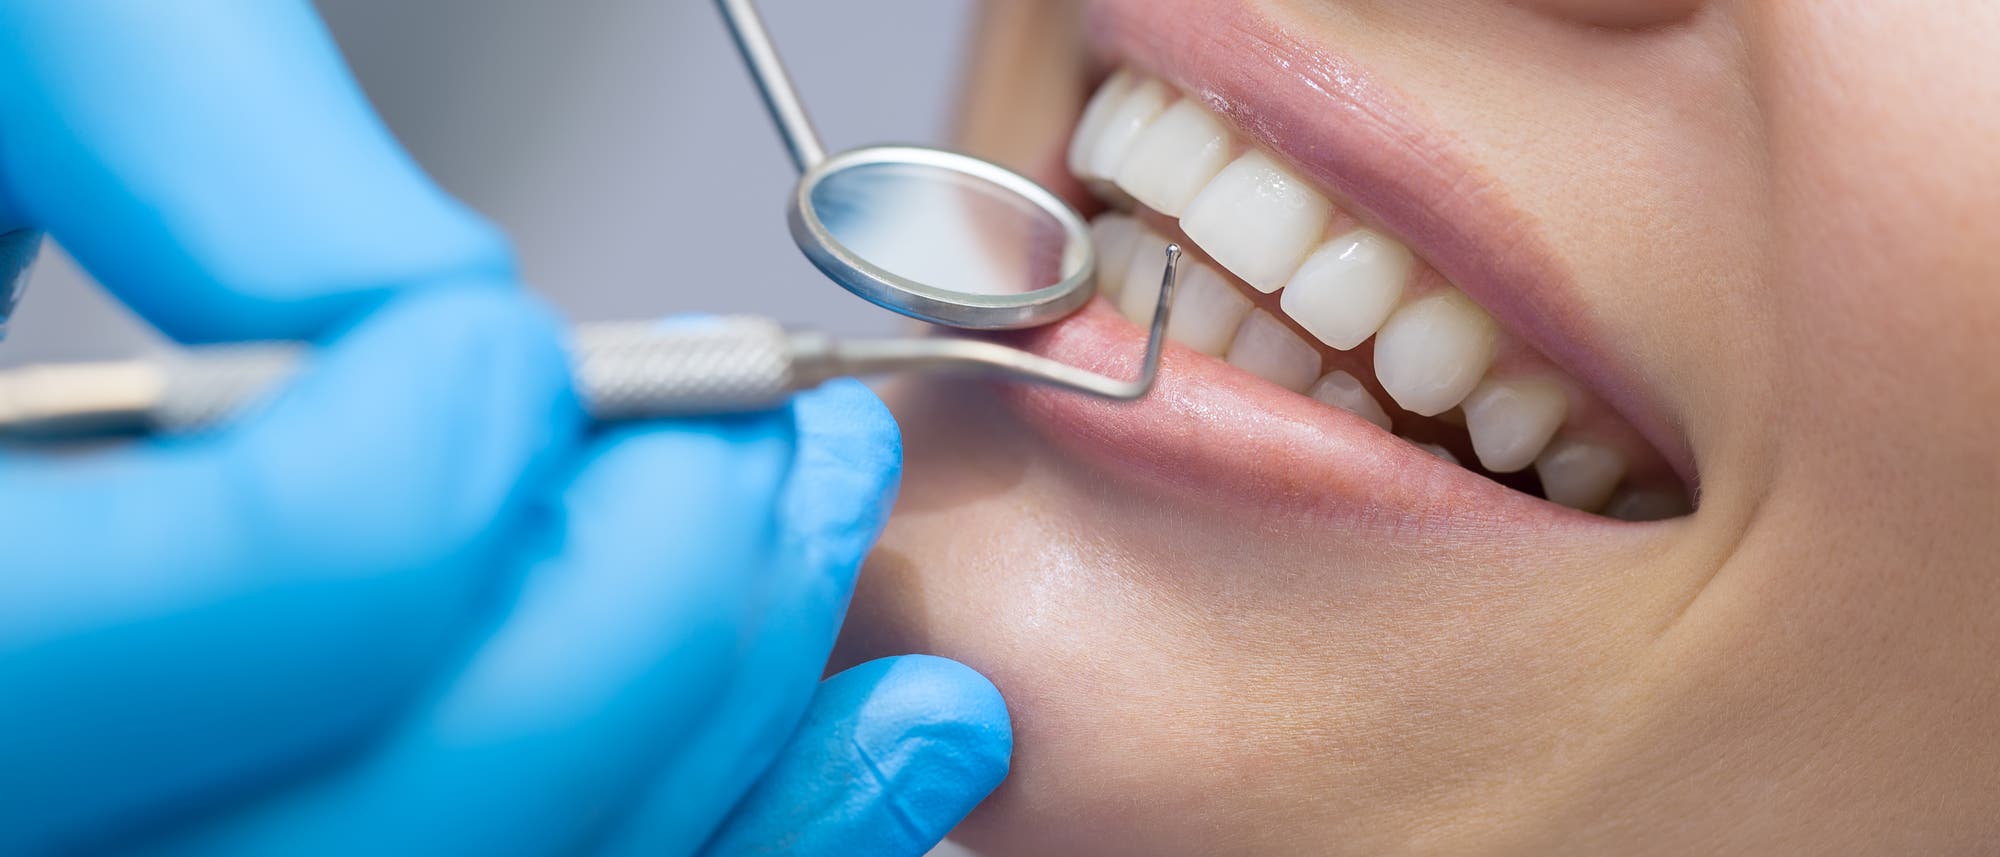 Ein Zahnarzt sieht sich die Zähne einer Patientin an